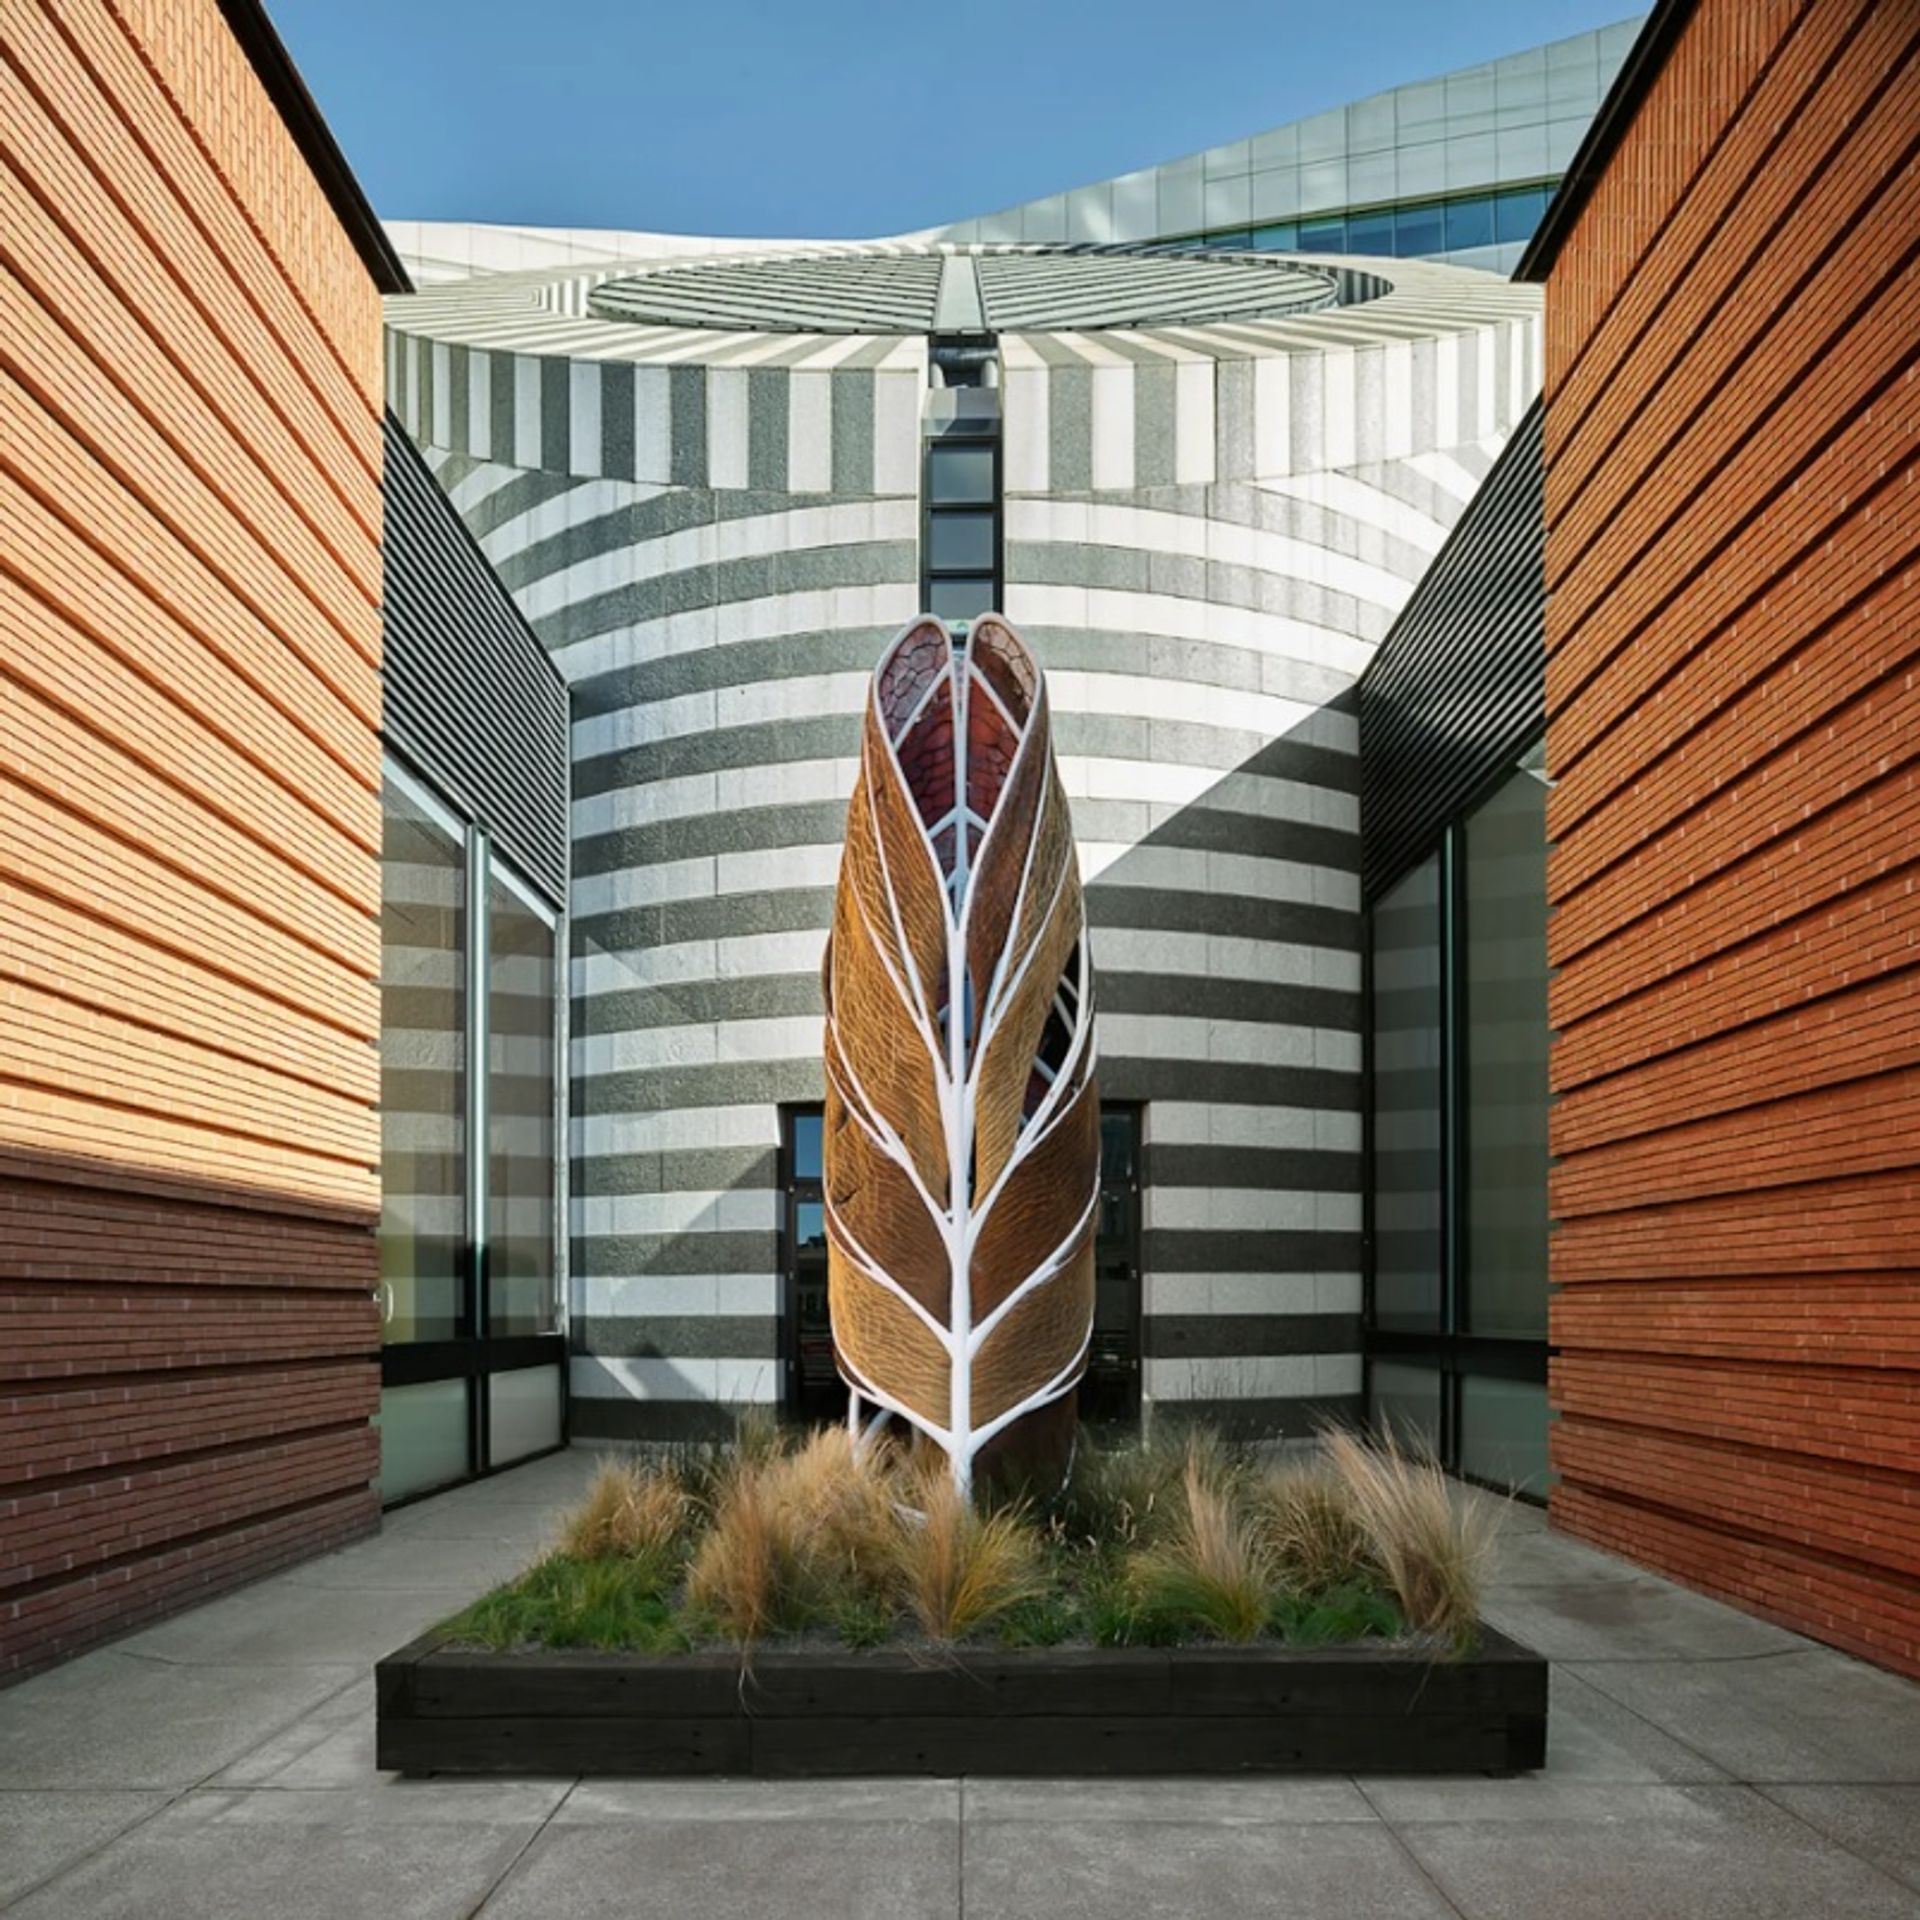 תצוגת התקנה של Nature x Humanity: Oxman Architects ב-SFMOMA

באדיבות SFMOMA, סן פרנסיסקו